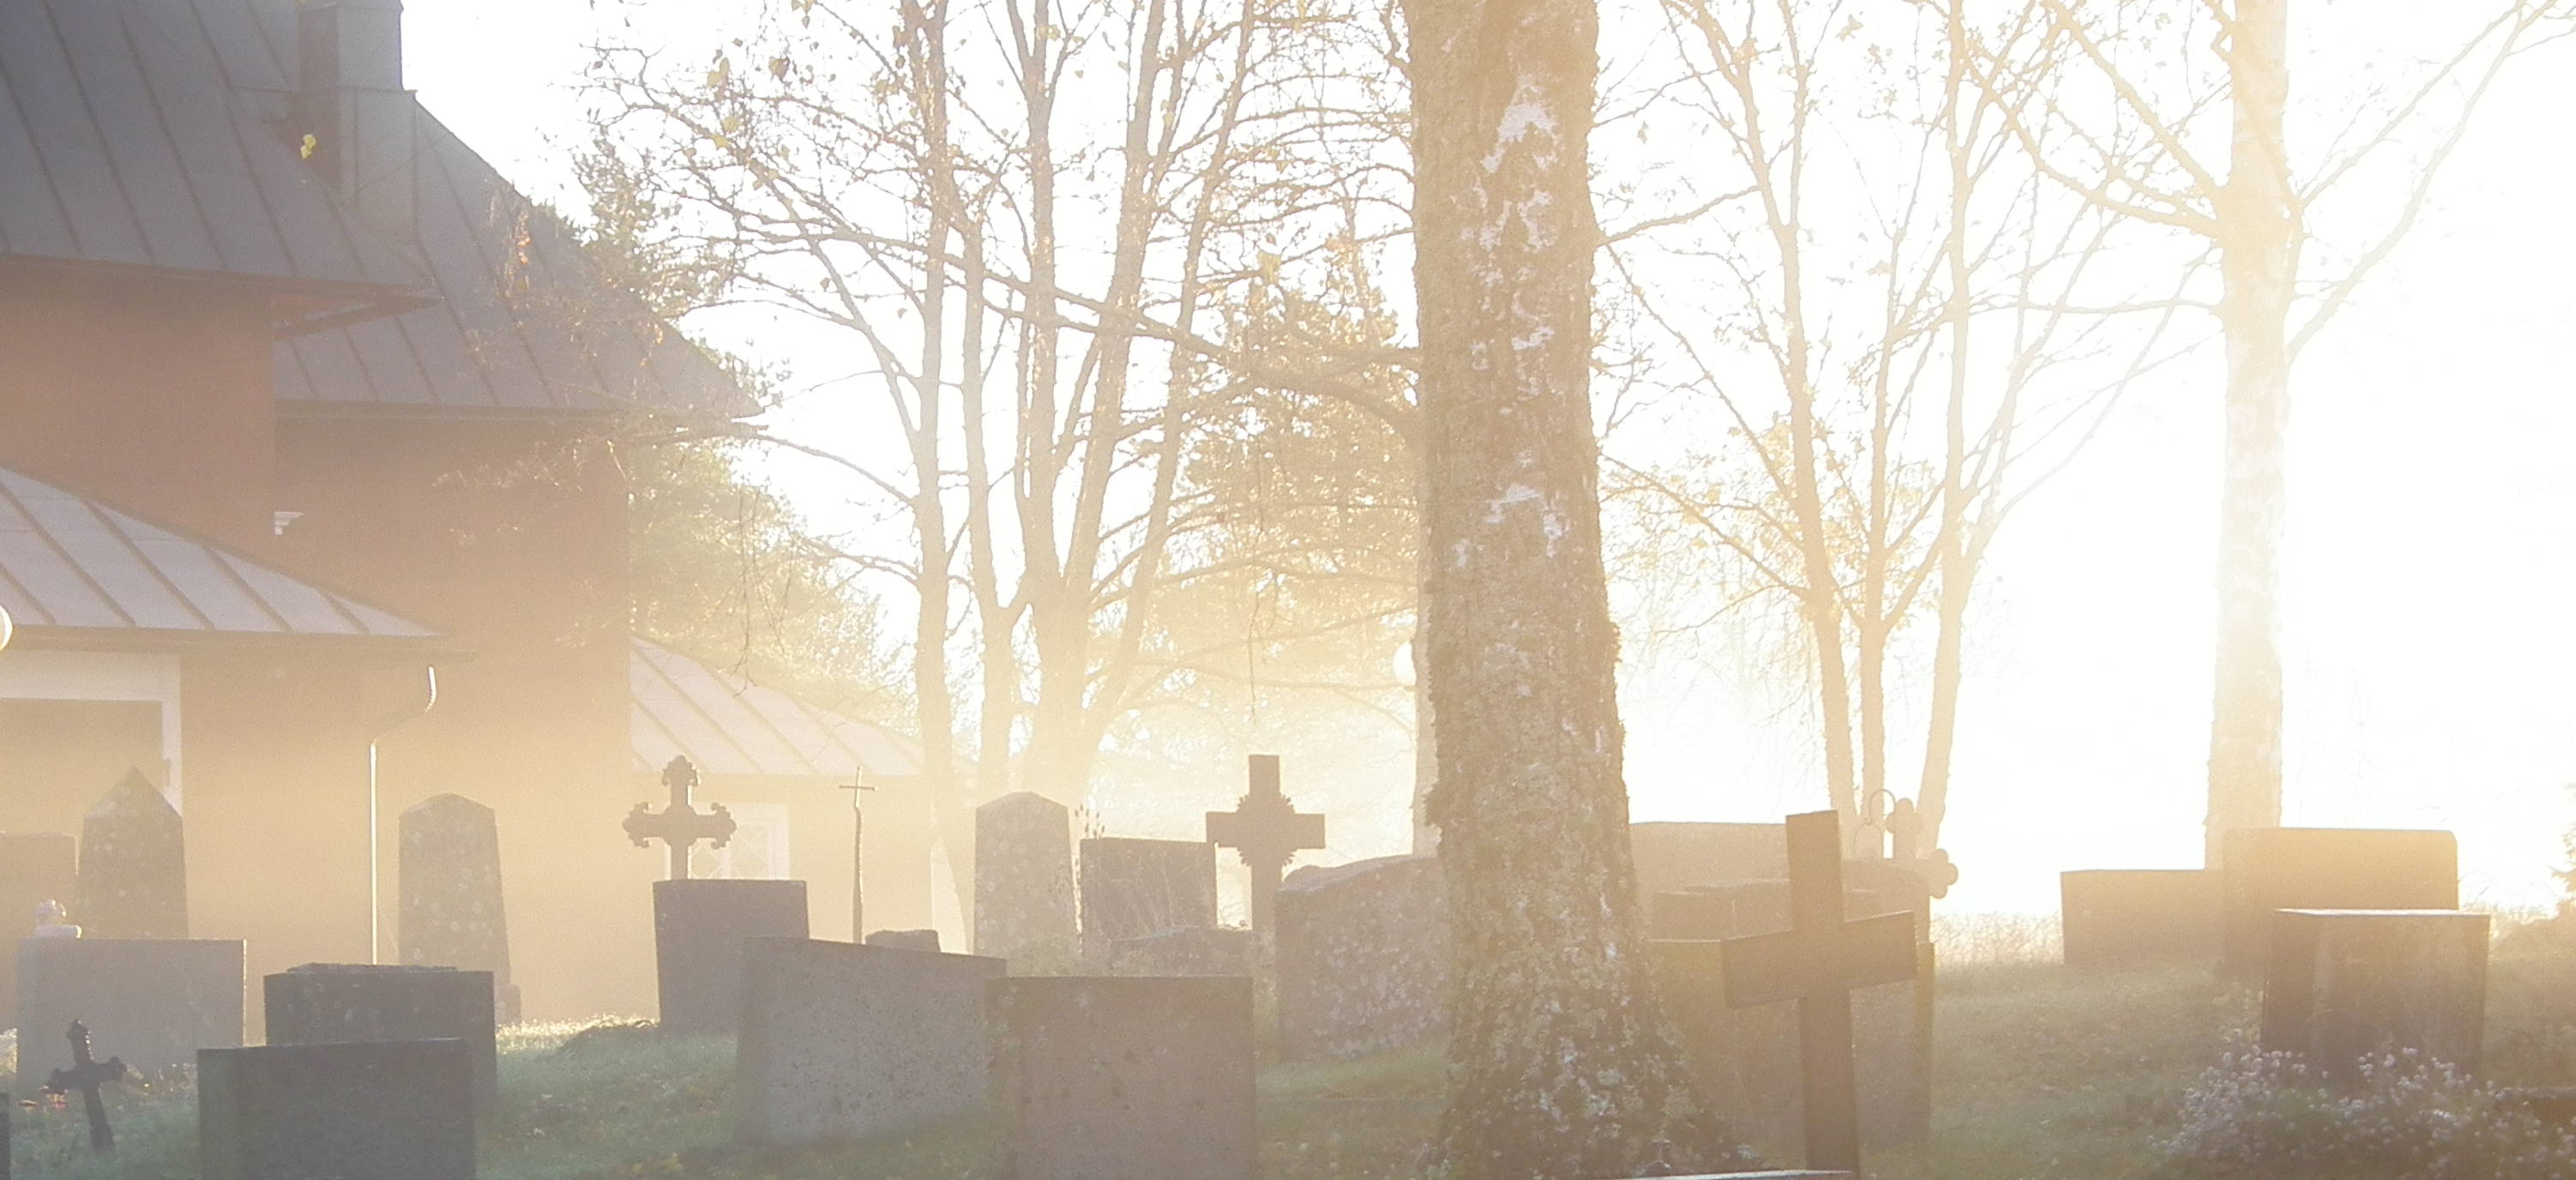 Hitis gravgård en tidig morgon när solen stiger upp och dimman ännu ligger över gravgården.